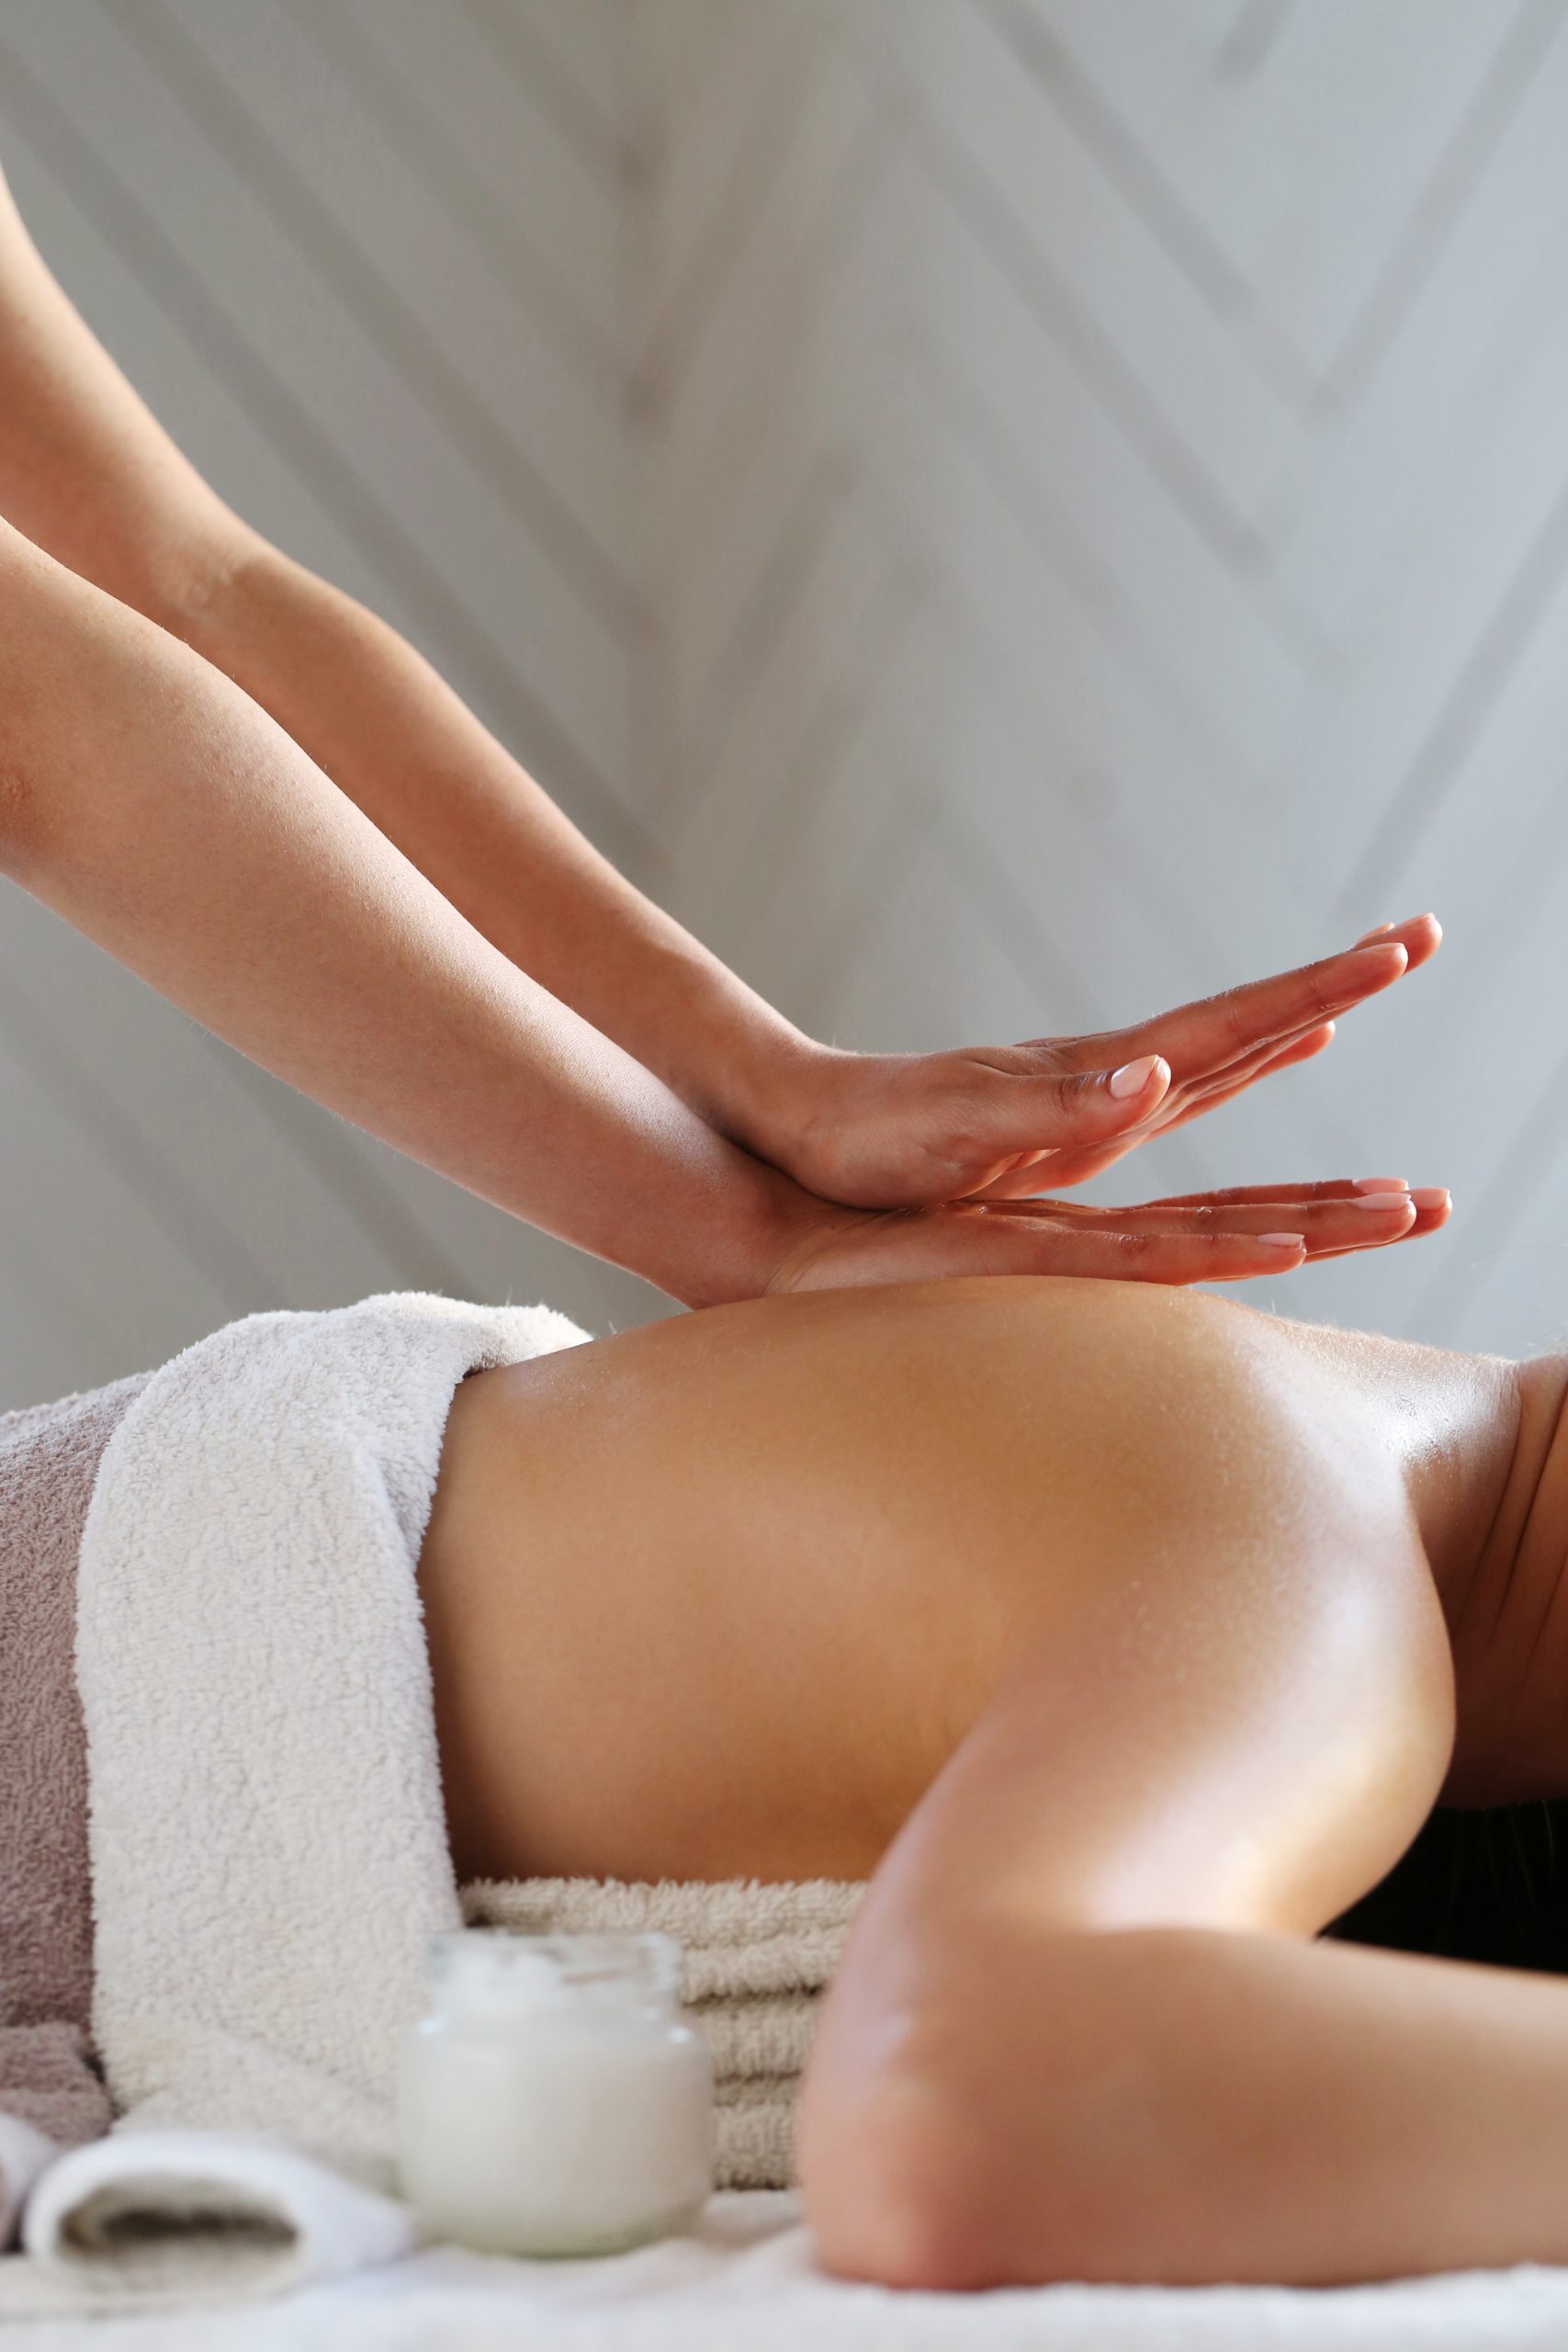 Hot Stone massage image - Massage Therapy